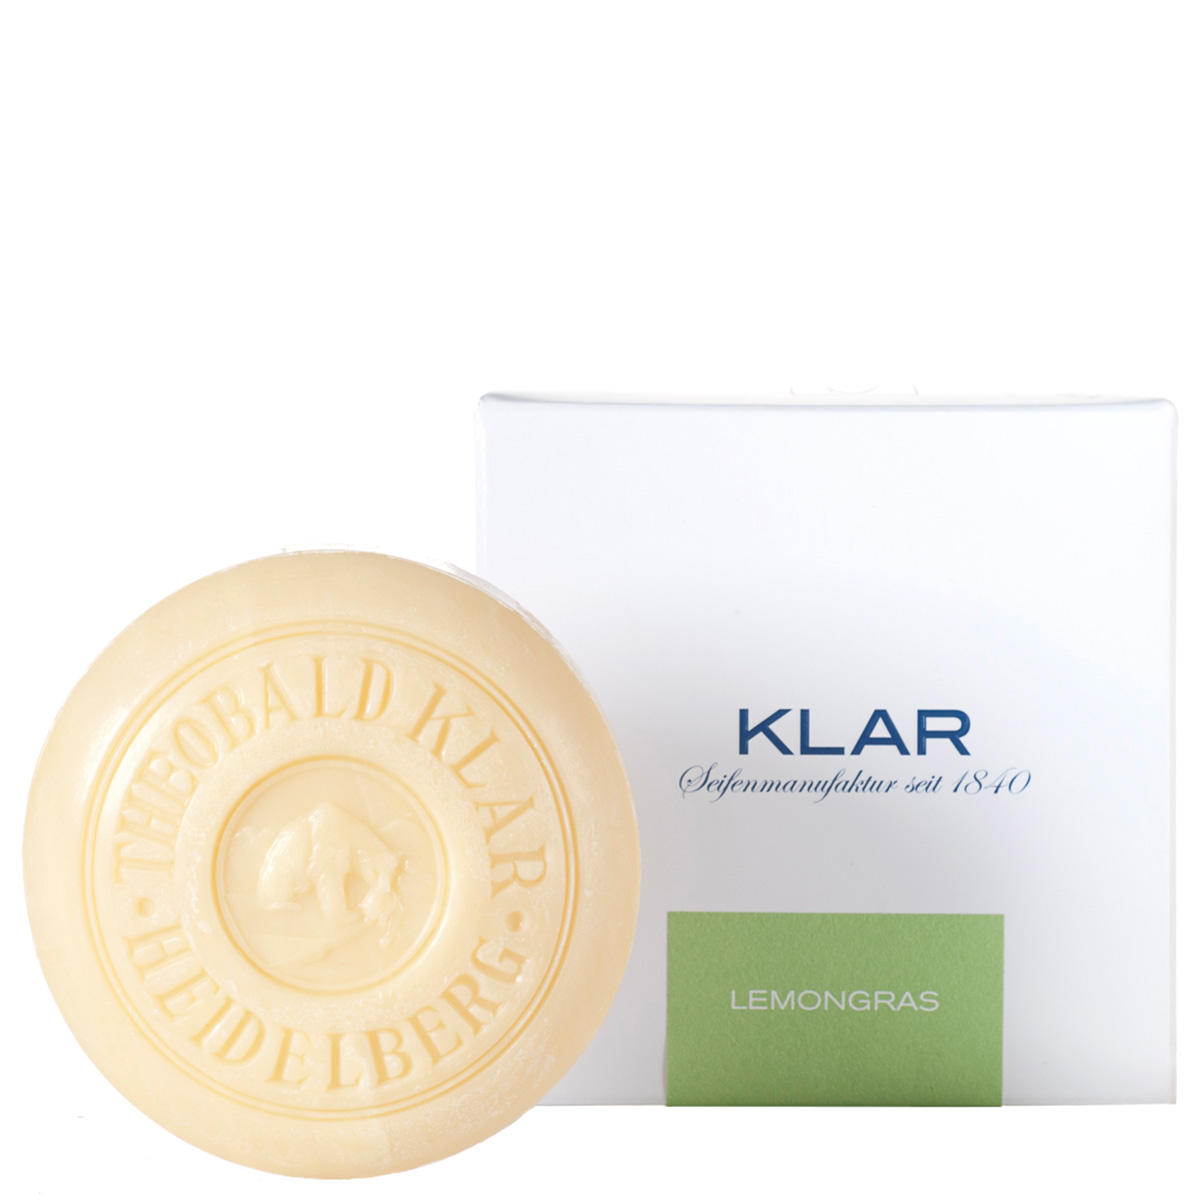 KLAR Lemongrass soap 150 g - 1